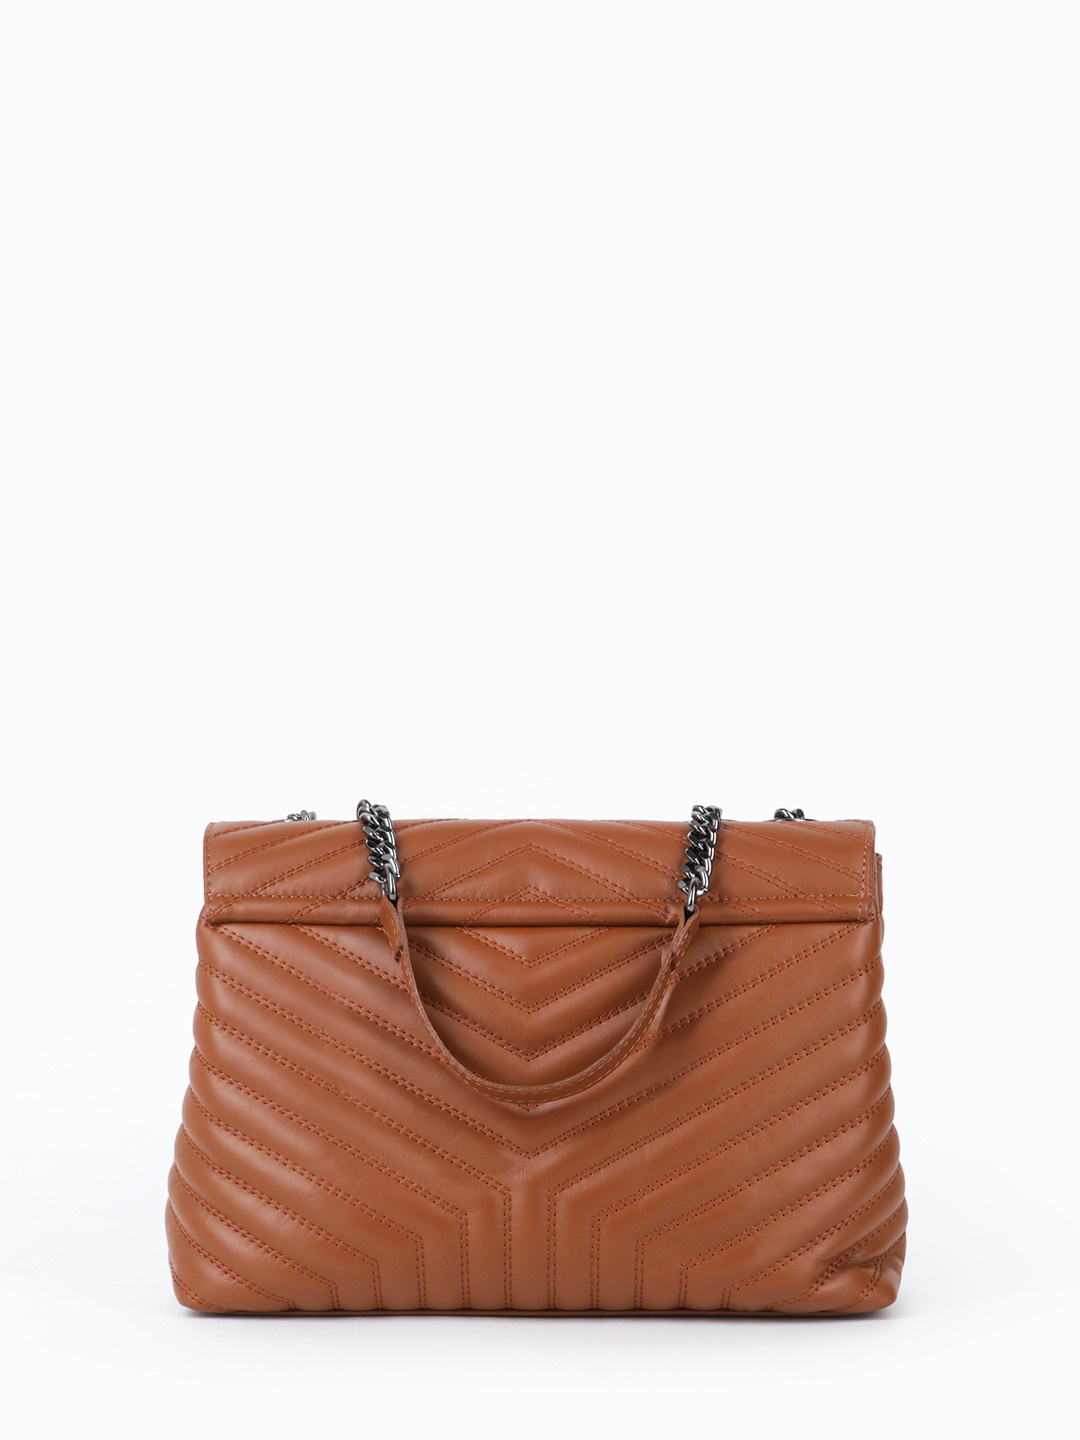 Фото Женская сумка-флэп из стеганой коричневой кожи с ручками на цепочках Классические сумки